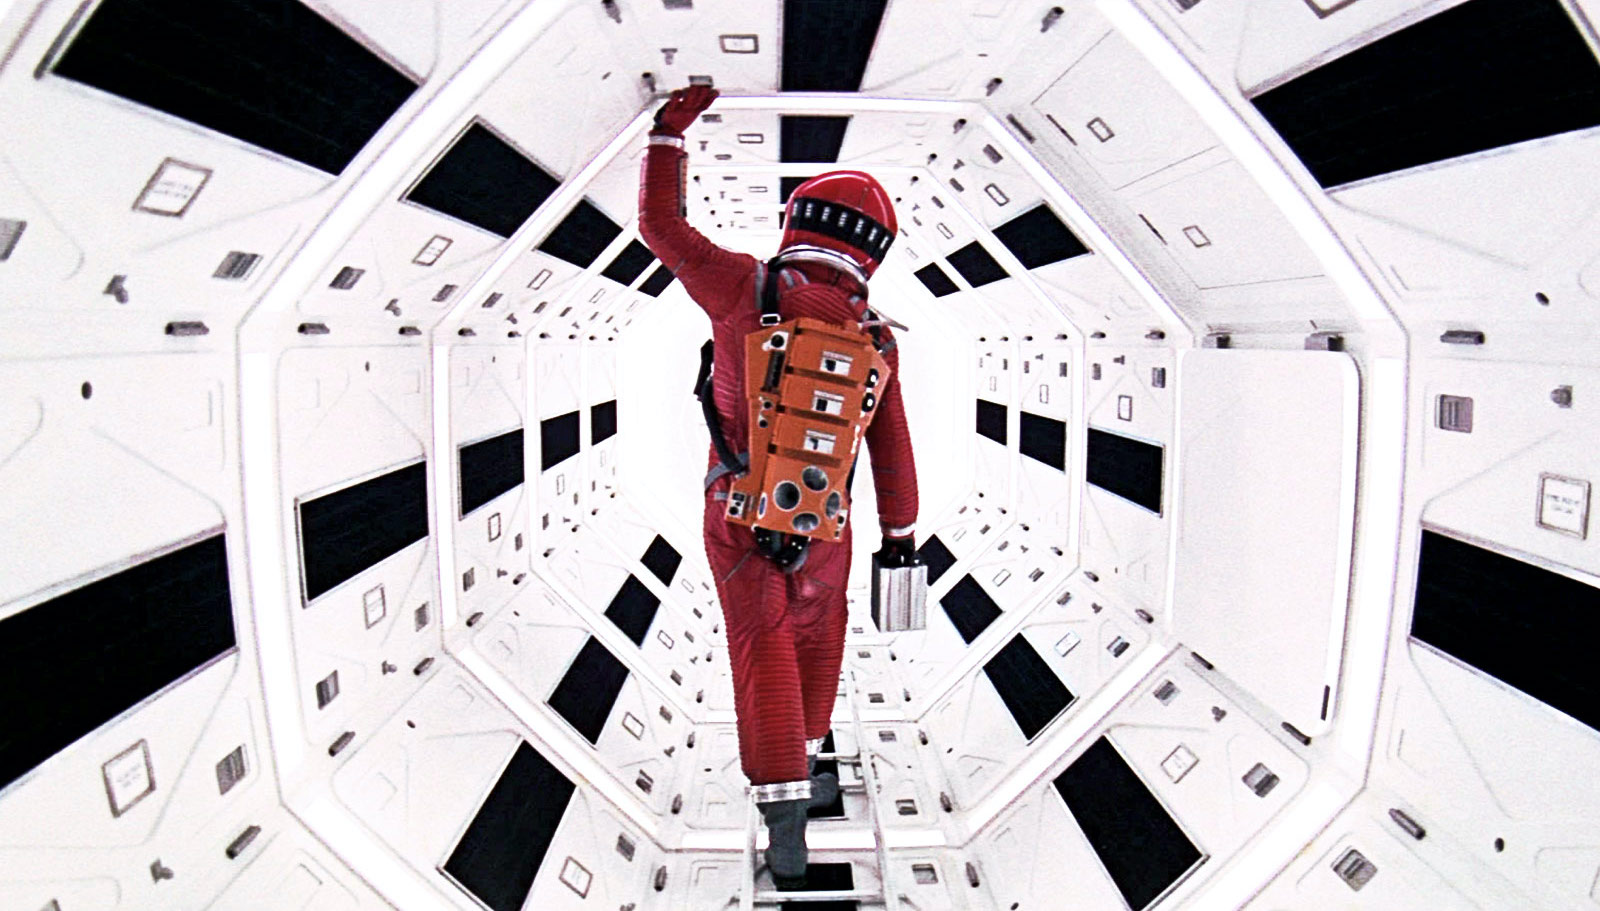 2001: A Space Odyssey, Masterpiece Atau Film yang Membosankan?